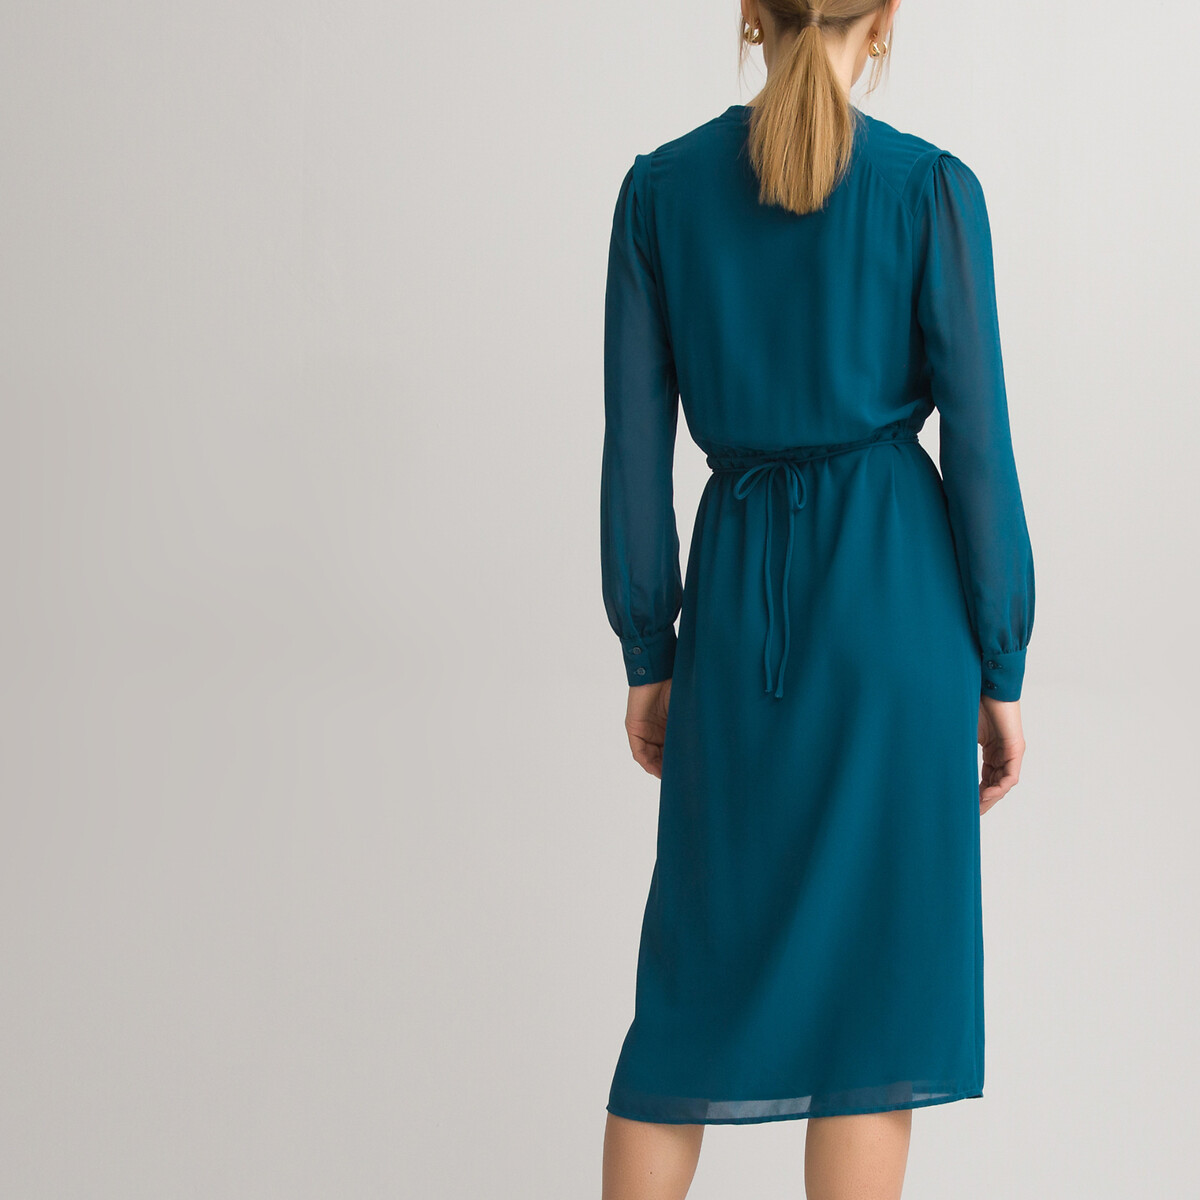 Платье-рубашка LaRedoute С круглым вырезом и длинными рукавами 46 (FR) - 52 (RUS) синий, размер 46 (FR) - 52 (RUS) С круглым вырезом и длинными рукавами 46 (FR) - 52 (RUS) синий - фото 4